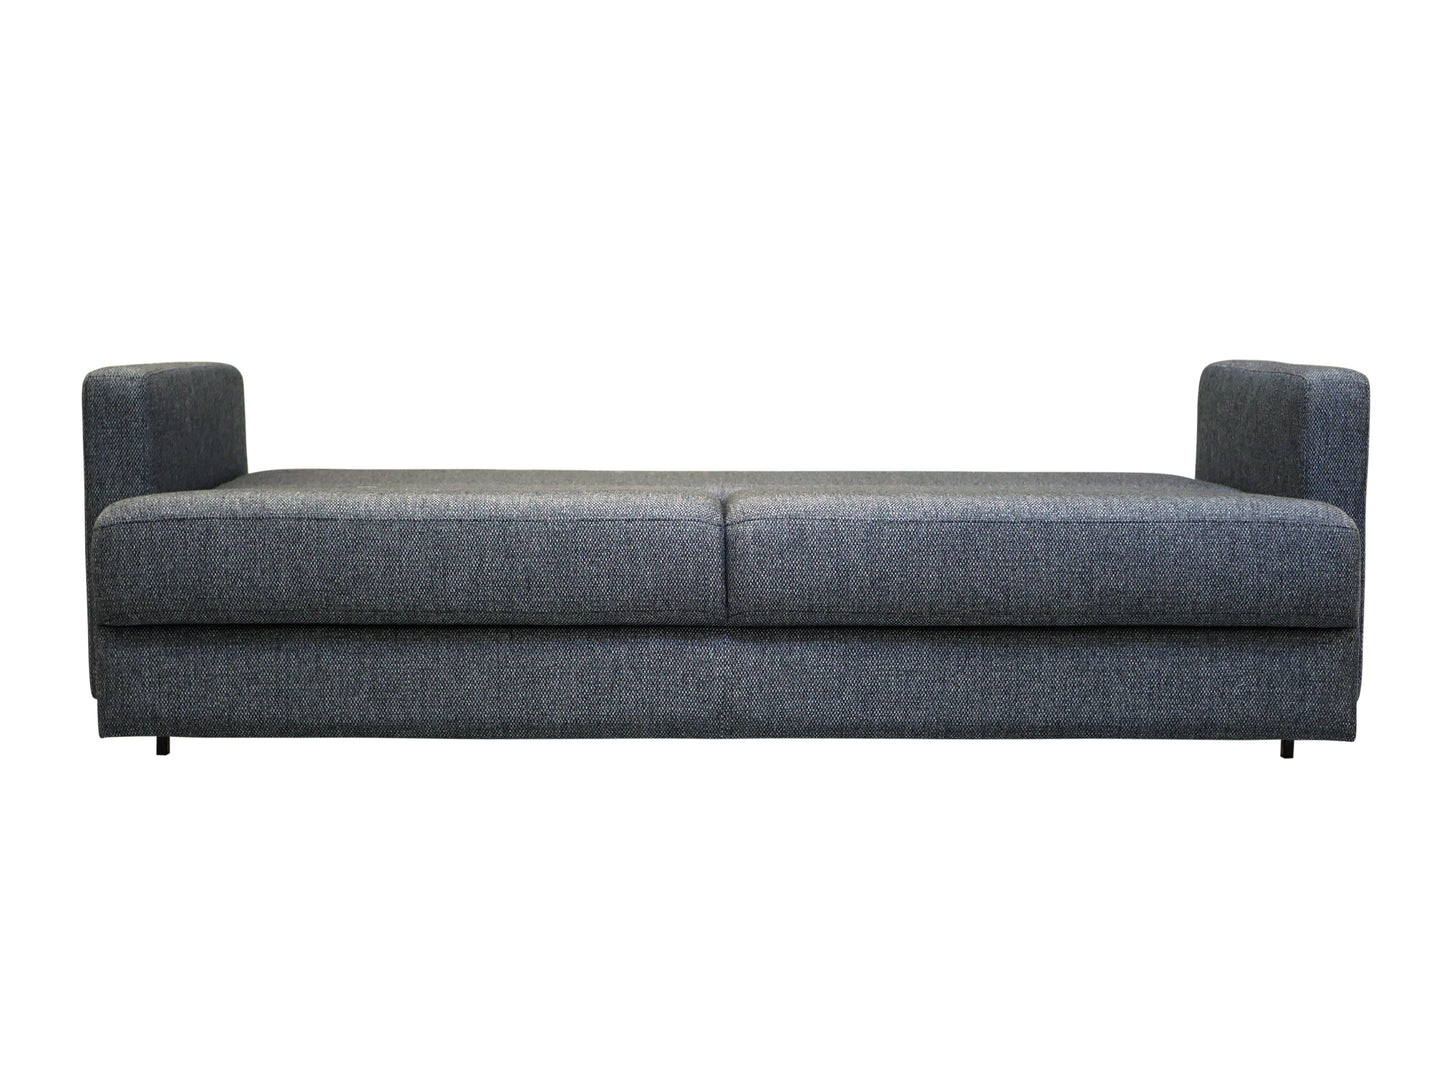 Luonto Emery Full XL Sleeper Sofa with Easy Deluxe Mechanism